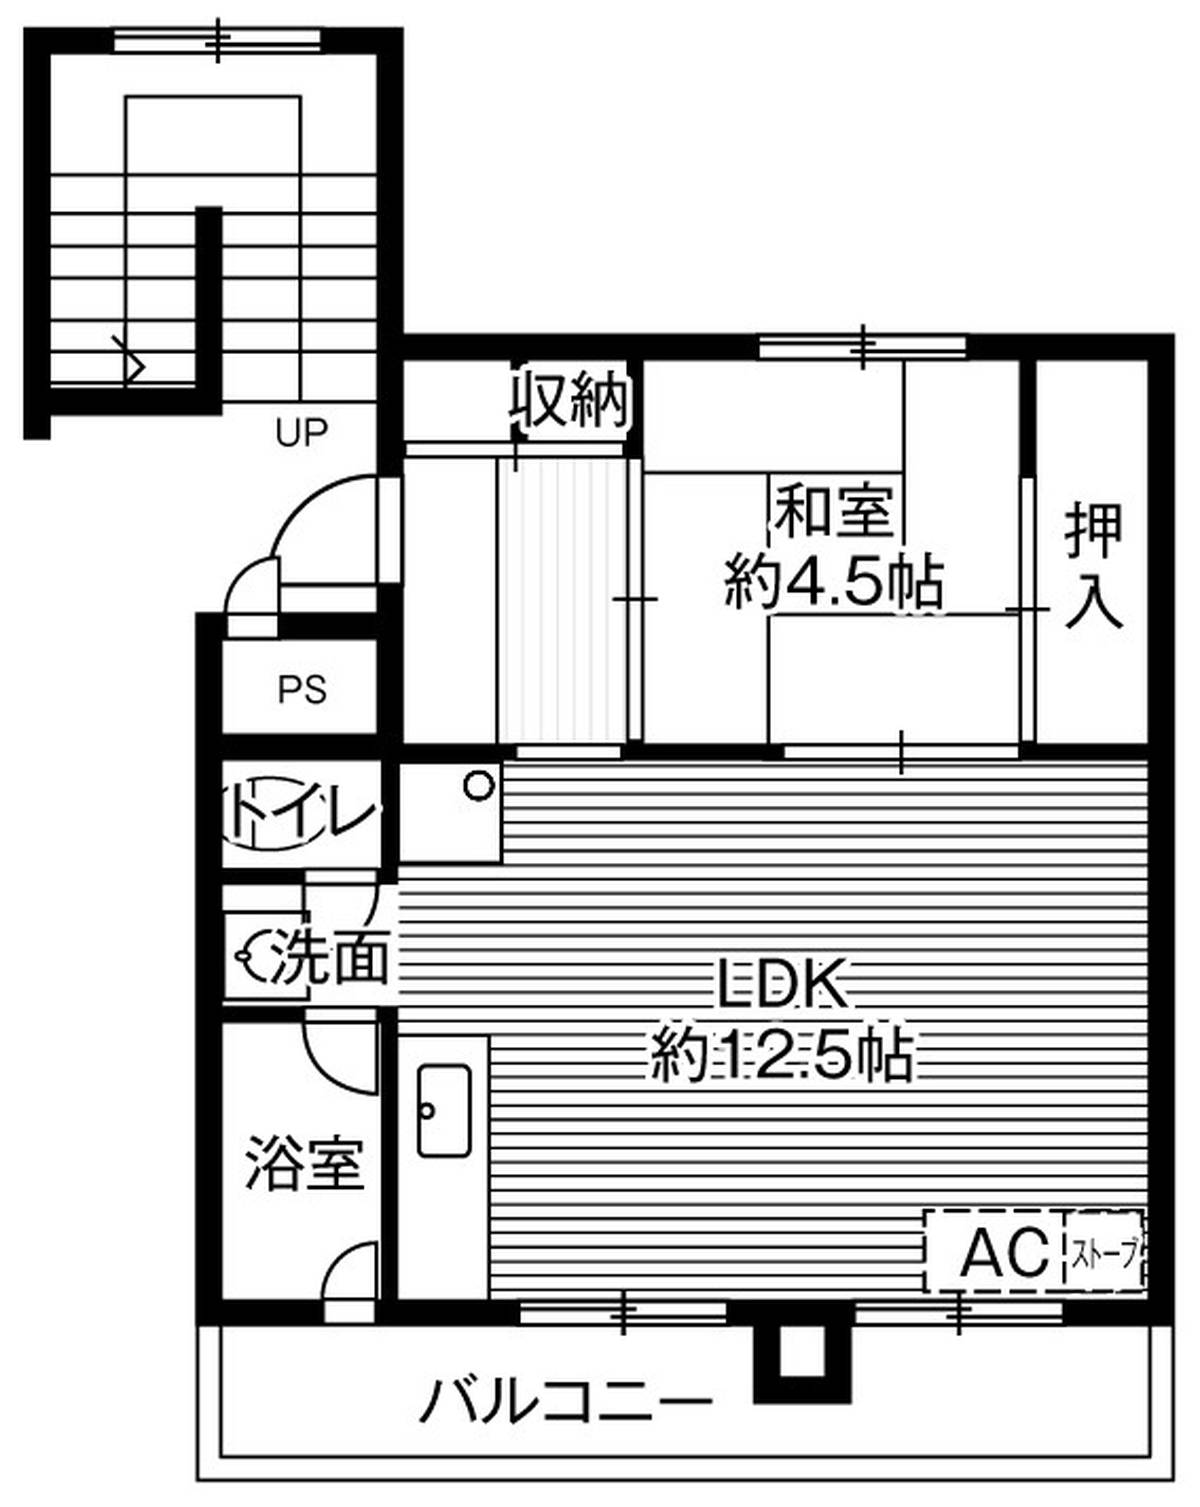 Sơ đồ phòng 1LDK của Village House Shinkawa ở Kita-ku